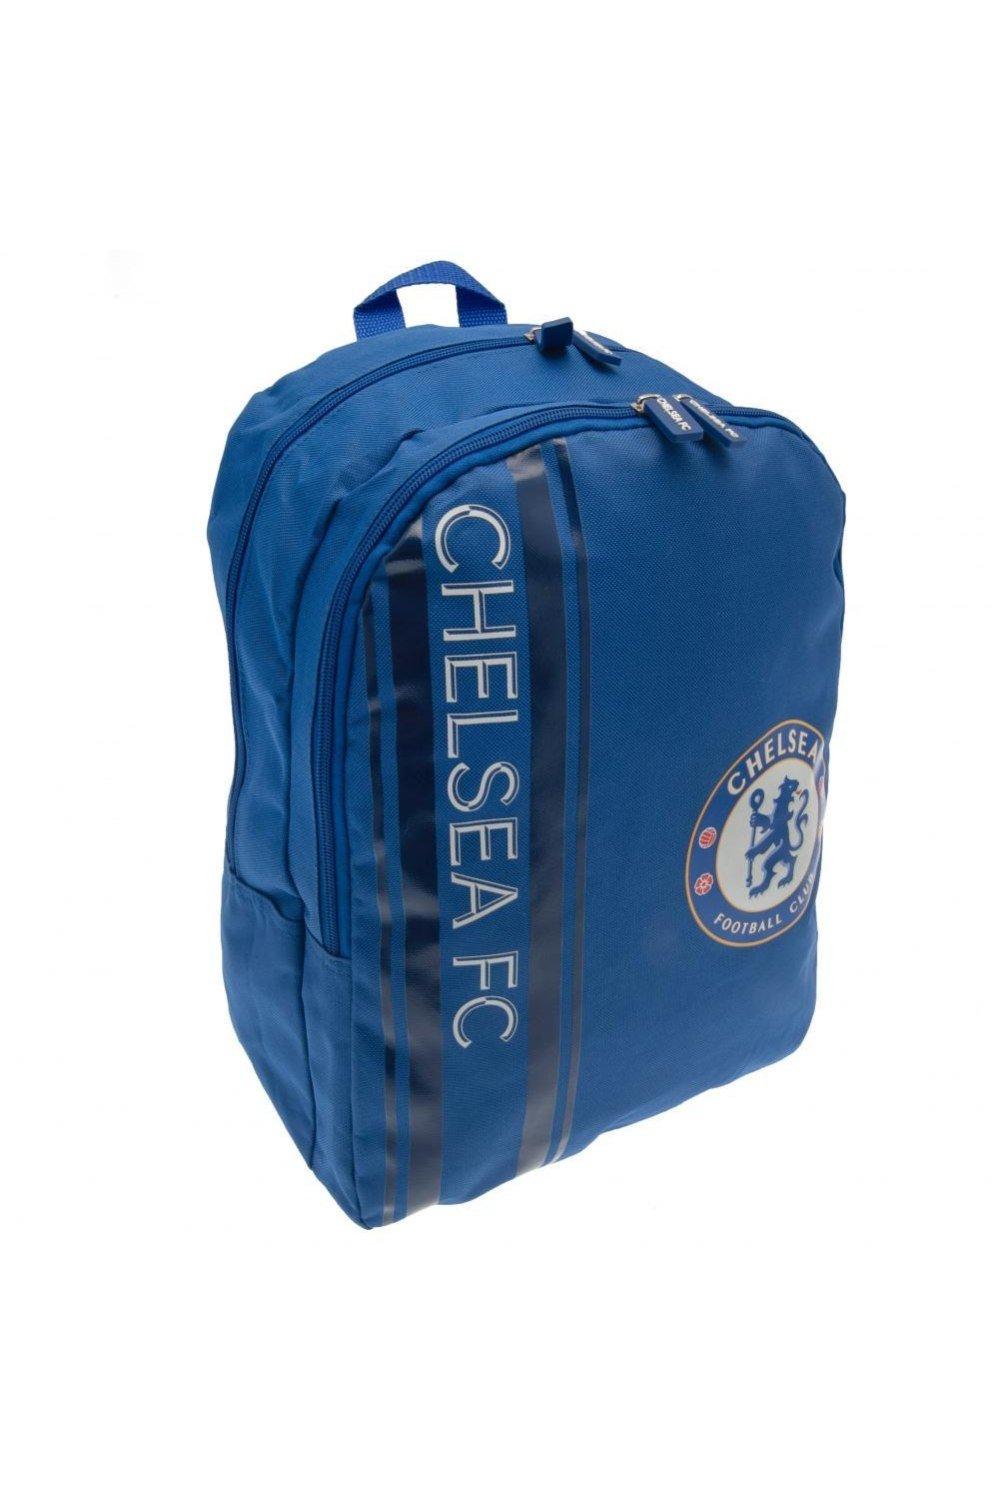 Рюкзак Chelsea FC, синий фото